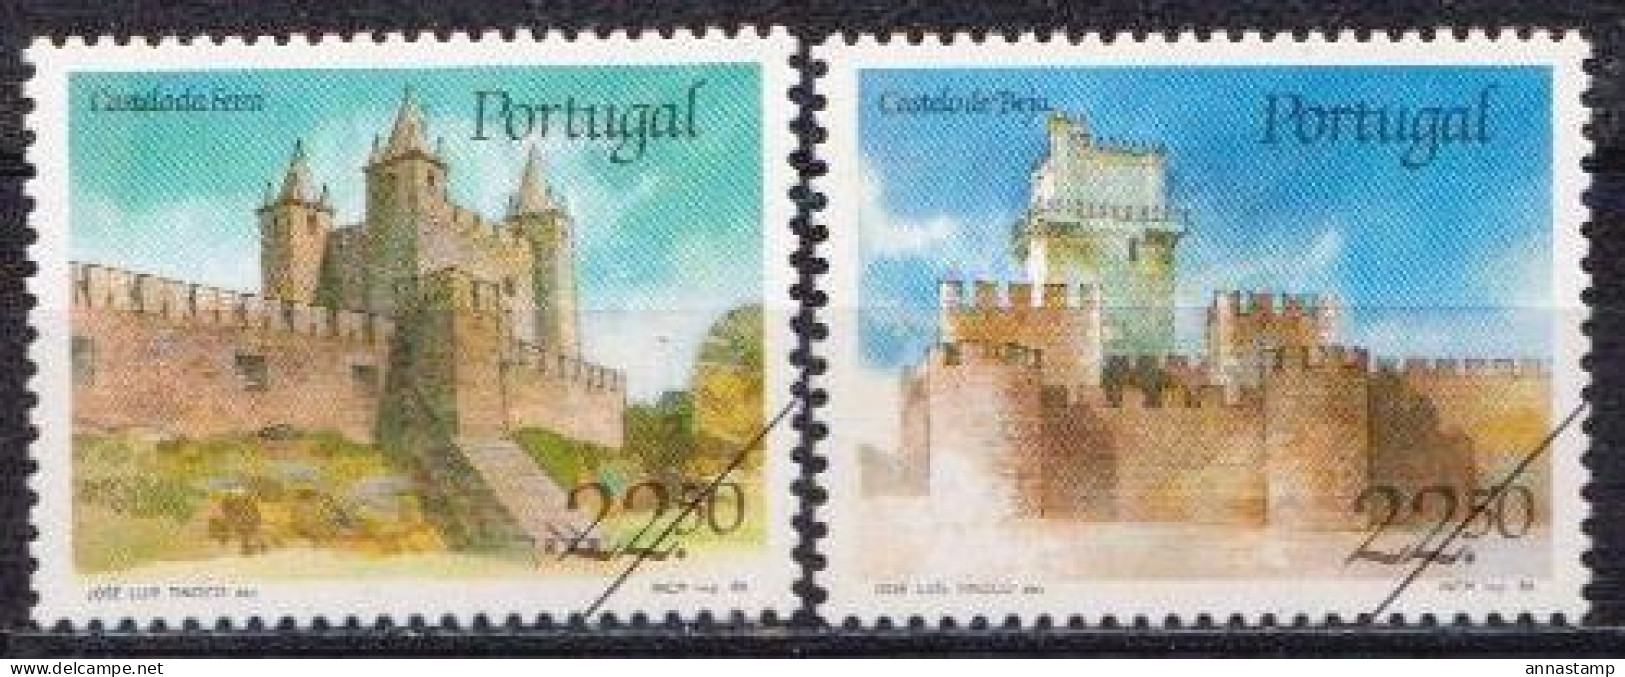 Portugal MNH Stamps, SPECIMEN - Castillos